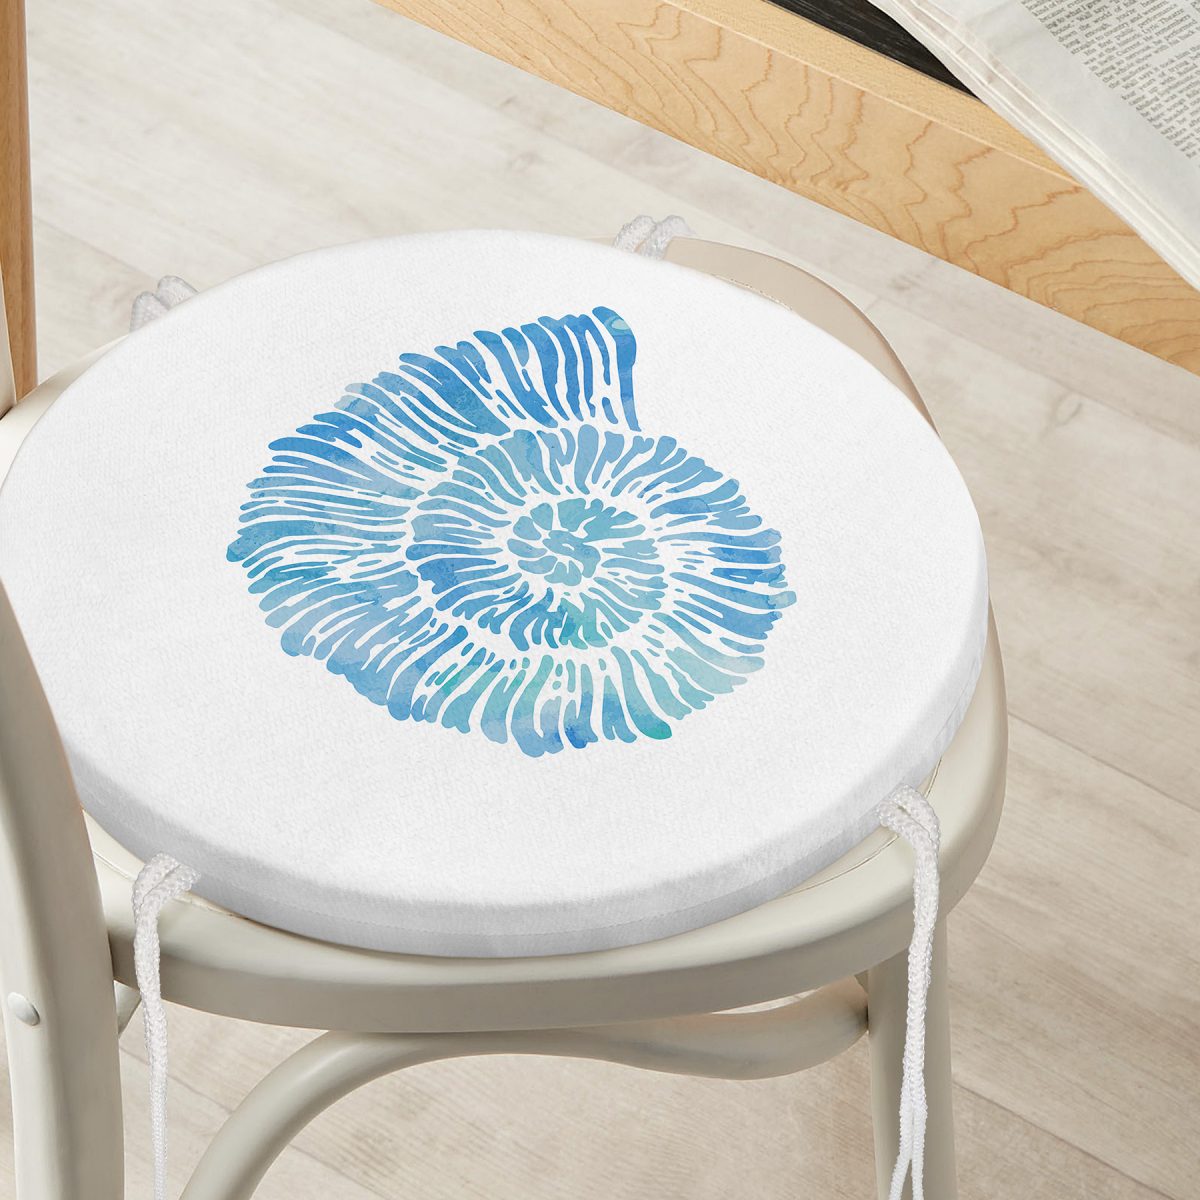 Beyaz Zemin Üzerinde Renkli Deniz Kabuğu Desenli Dijital Baskılı Modern Yuvarlak Fermuarlı Sandalye Minderi Realhomes